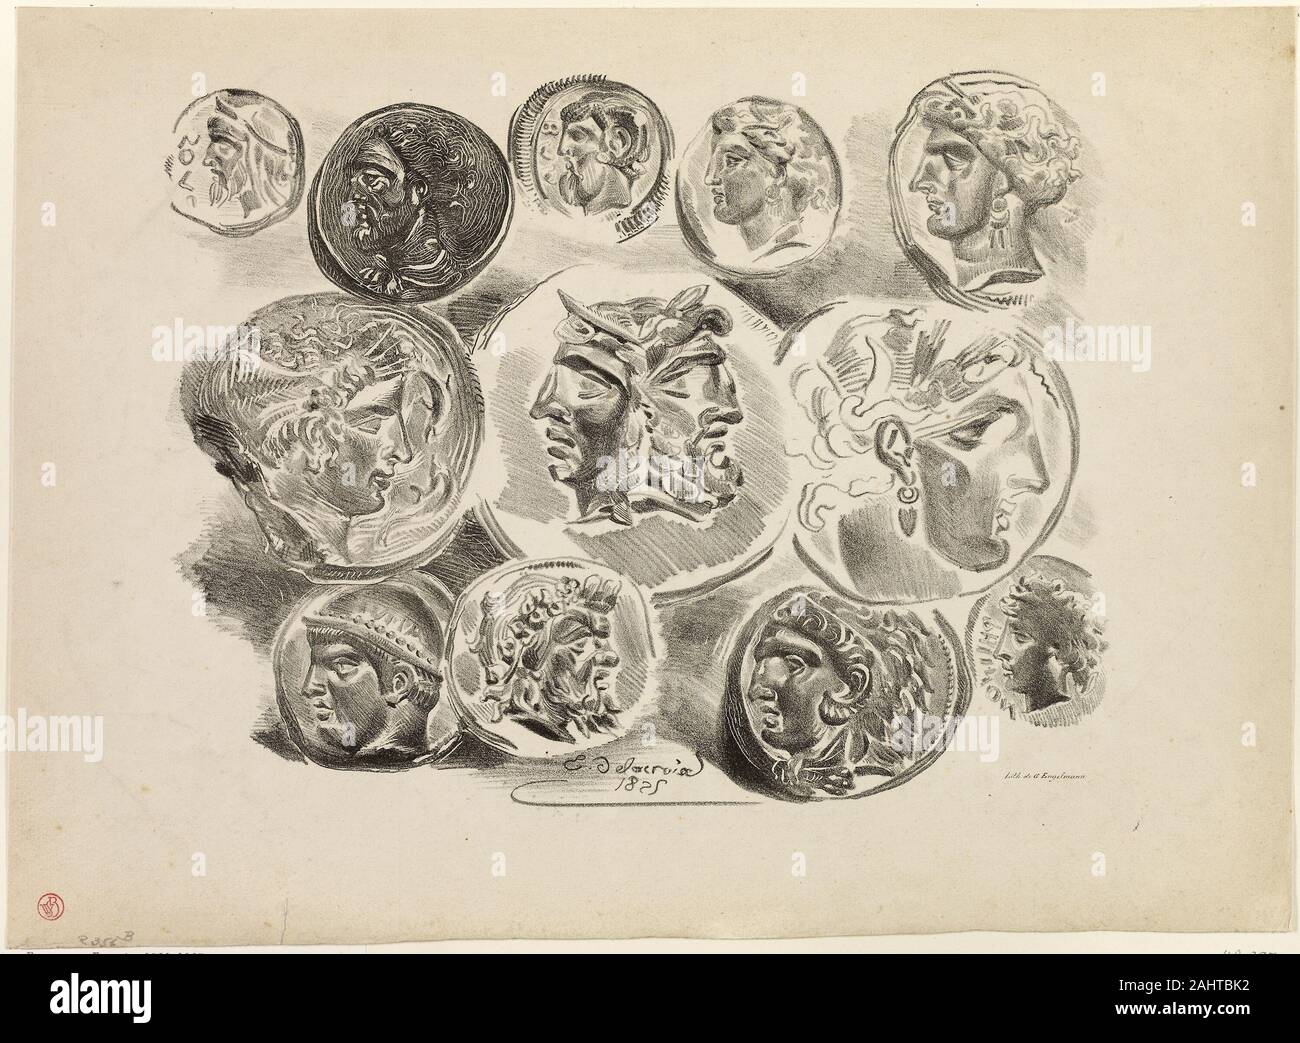 Eugène Delacroix. Feuille de douze médailles antiques. 1825. La France. Lithographie en noir sur papier vélin gris clair Banque D'Images